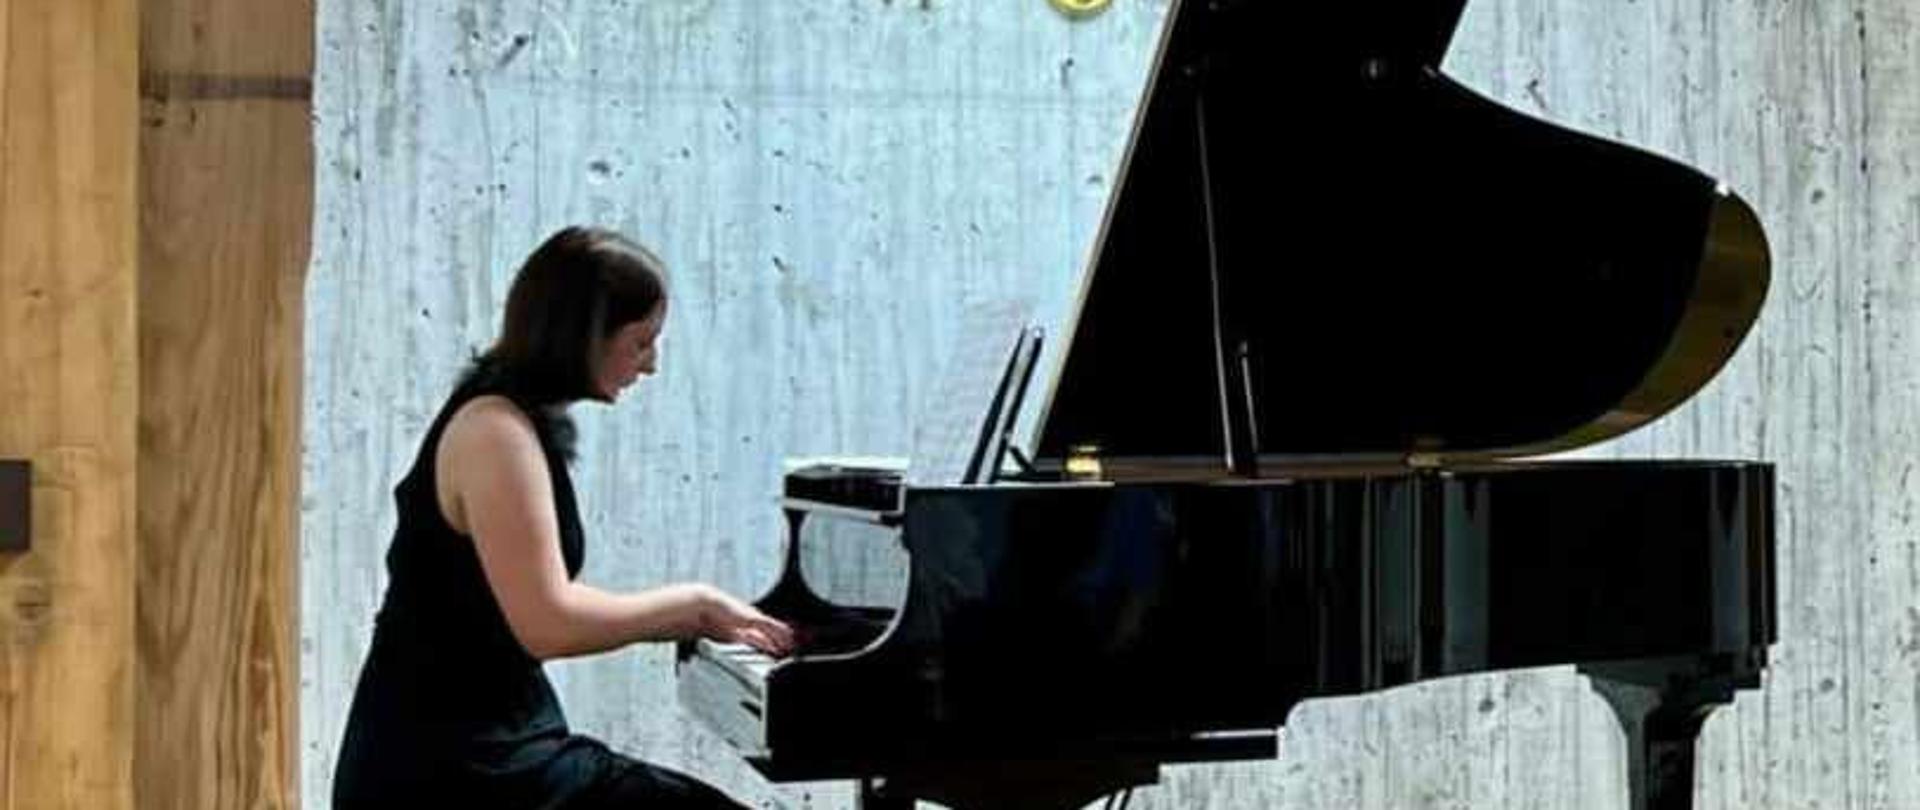 Zdjęcie kolorowe. Młoda pianistka w czarnej sukni gra na fortepianie. Drewniana scena. W tle napis Muzeum Pomorza Środkowego.